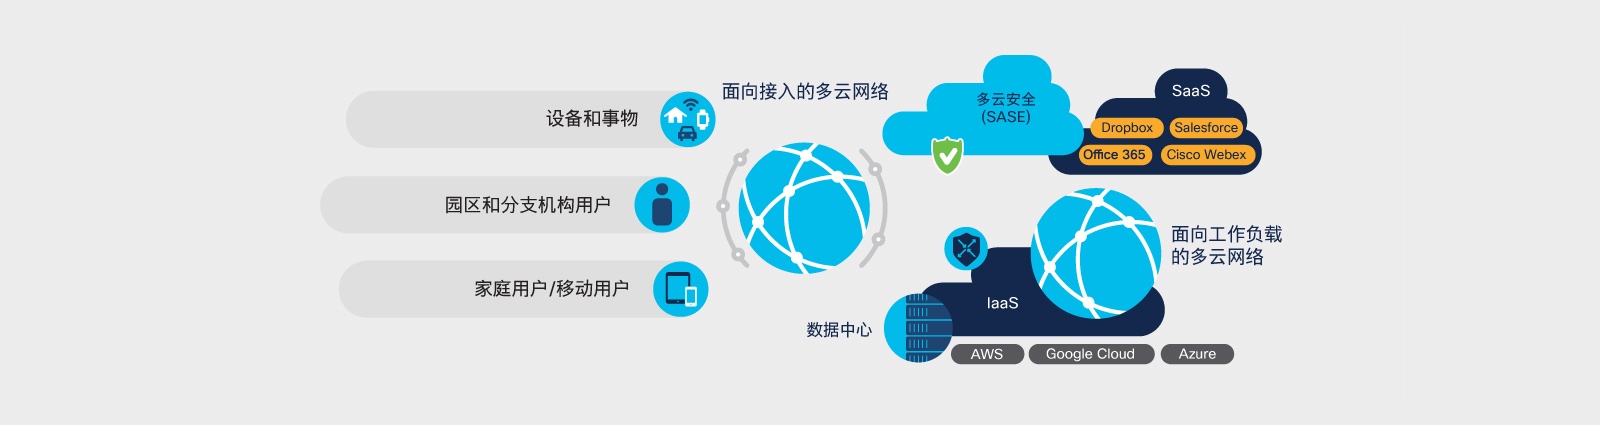 图 4. 多云网络：工作负载、访问和安全 